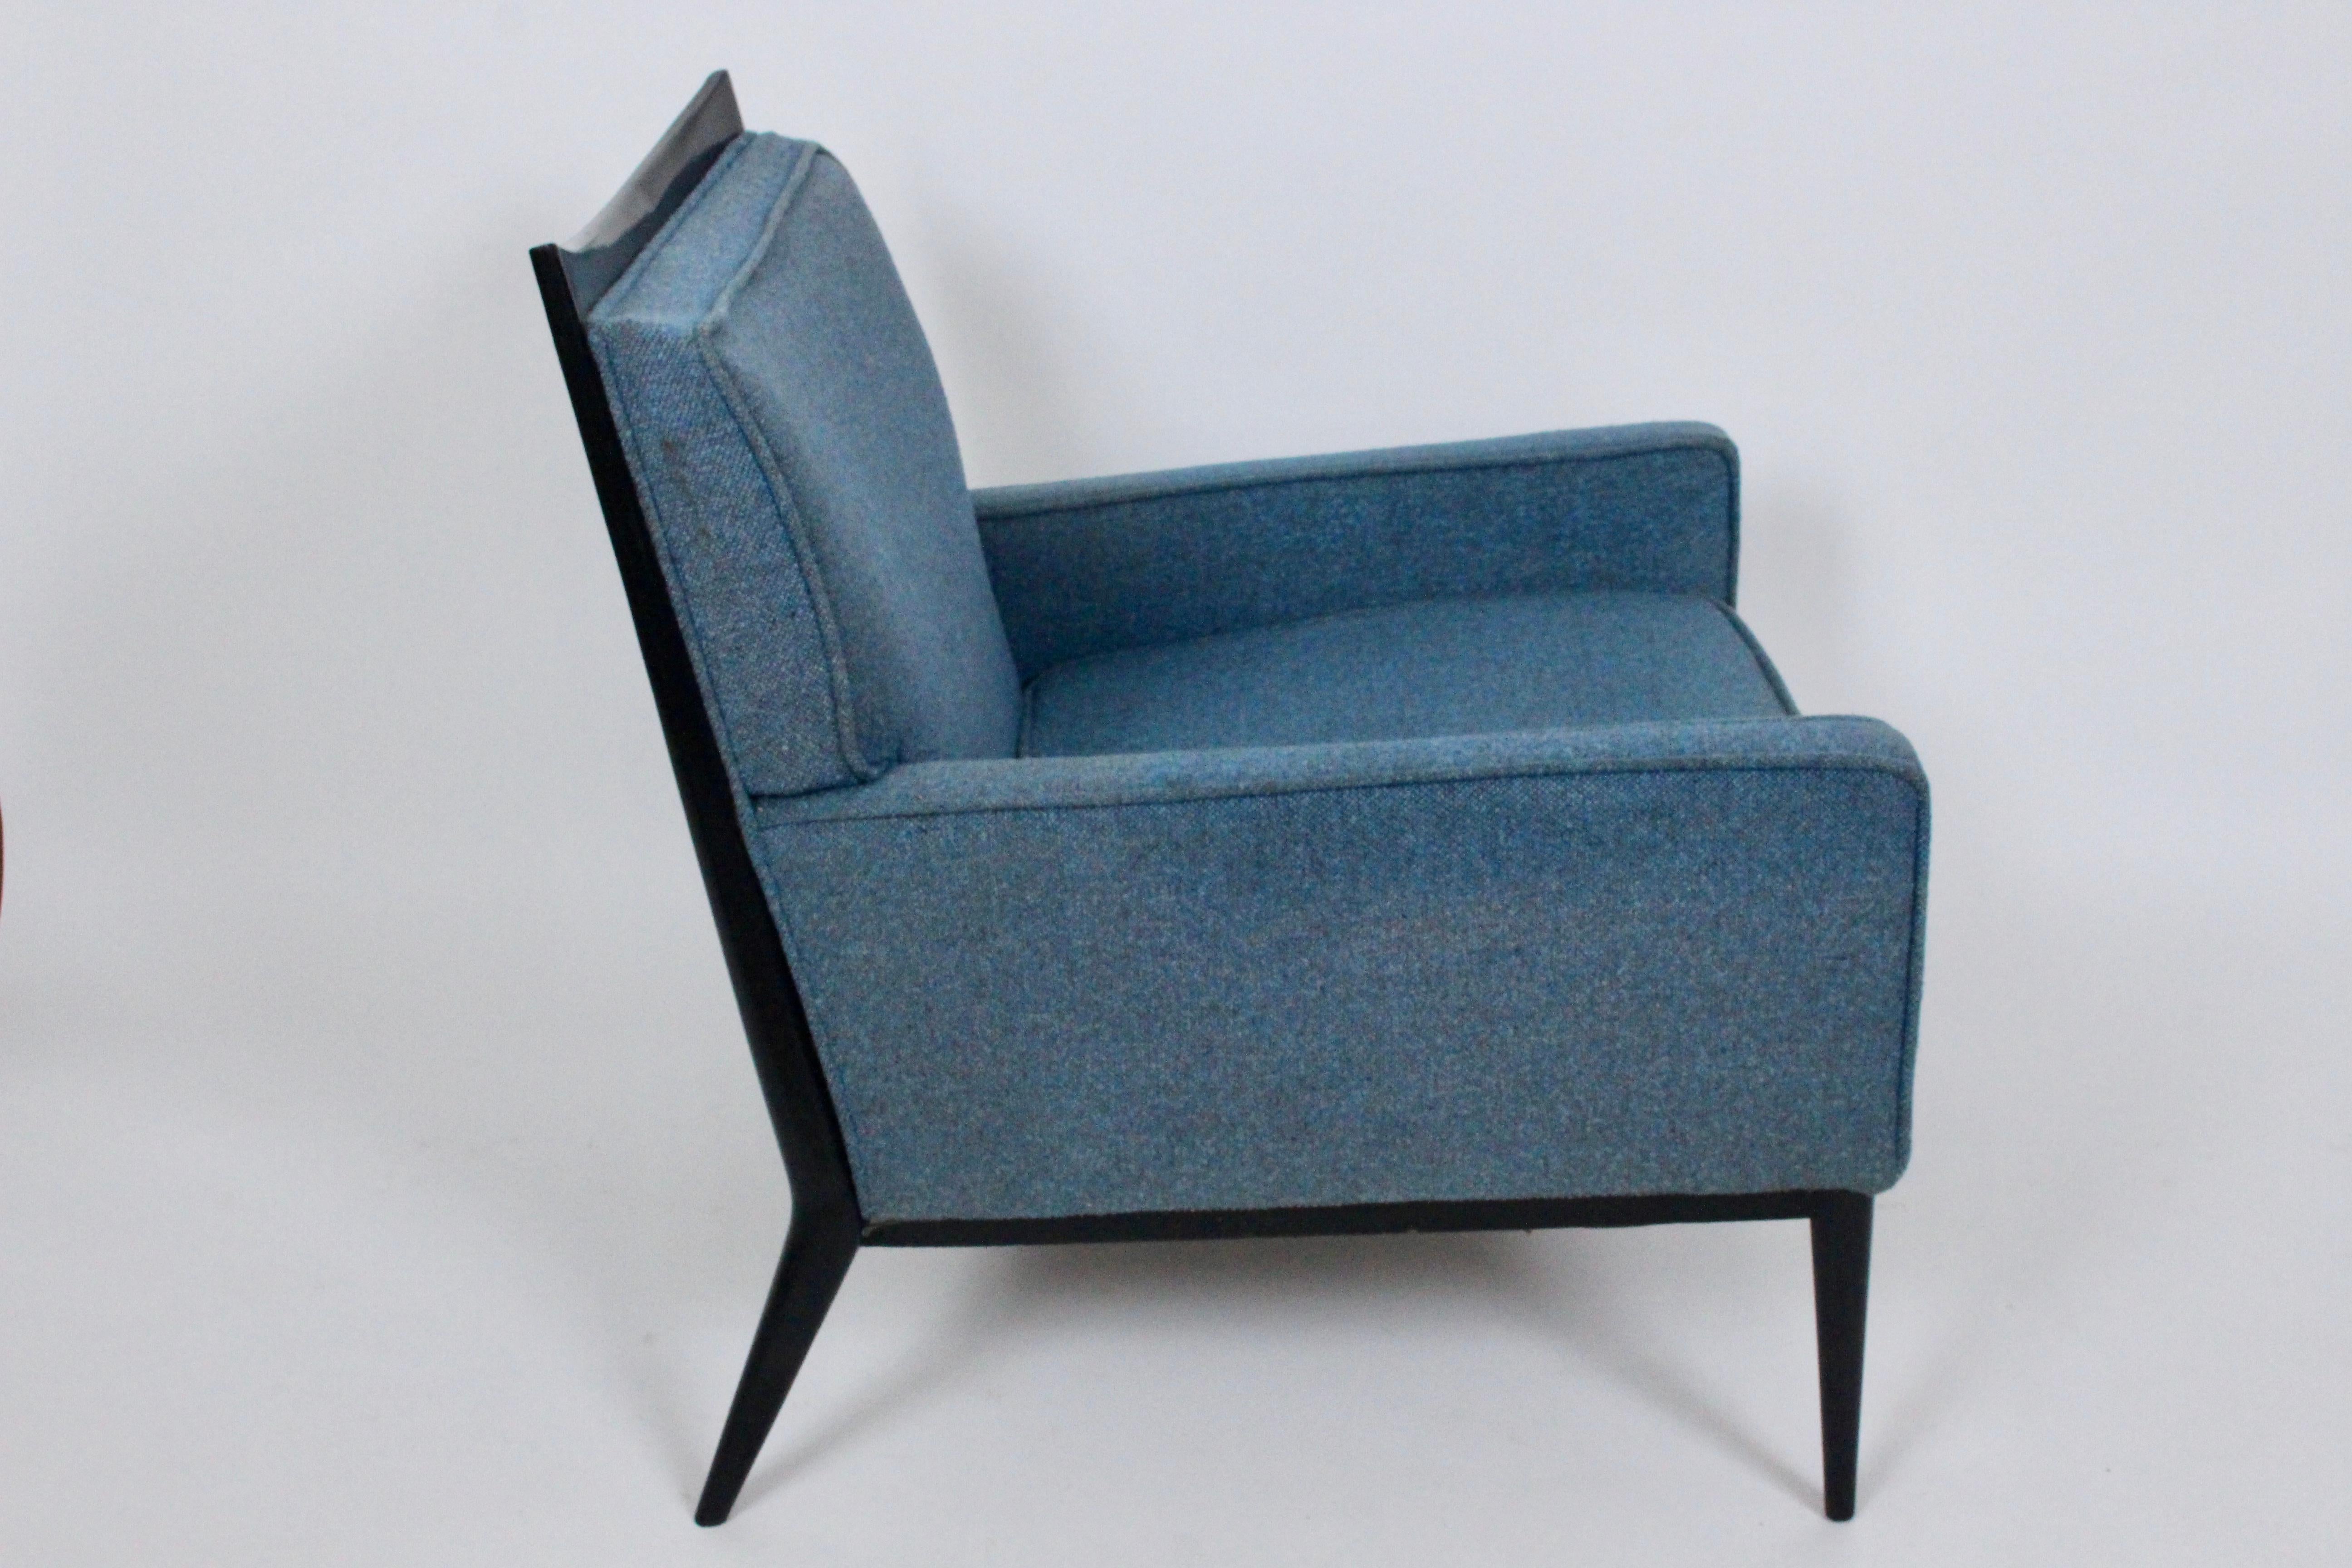 Paul McCobb für Directional Furniture 1322 Loungesessel, loses Sitzkissen. Um 1950er Jahre. Mit einem Rahmen aus schwarz ebonisiertem Nussbaumholz, konisch zulaufenden Beinen und einer bequemen gebogenen und gepolsterten Rückenlehne. Reversible